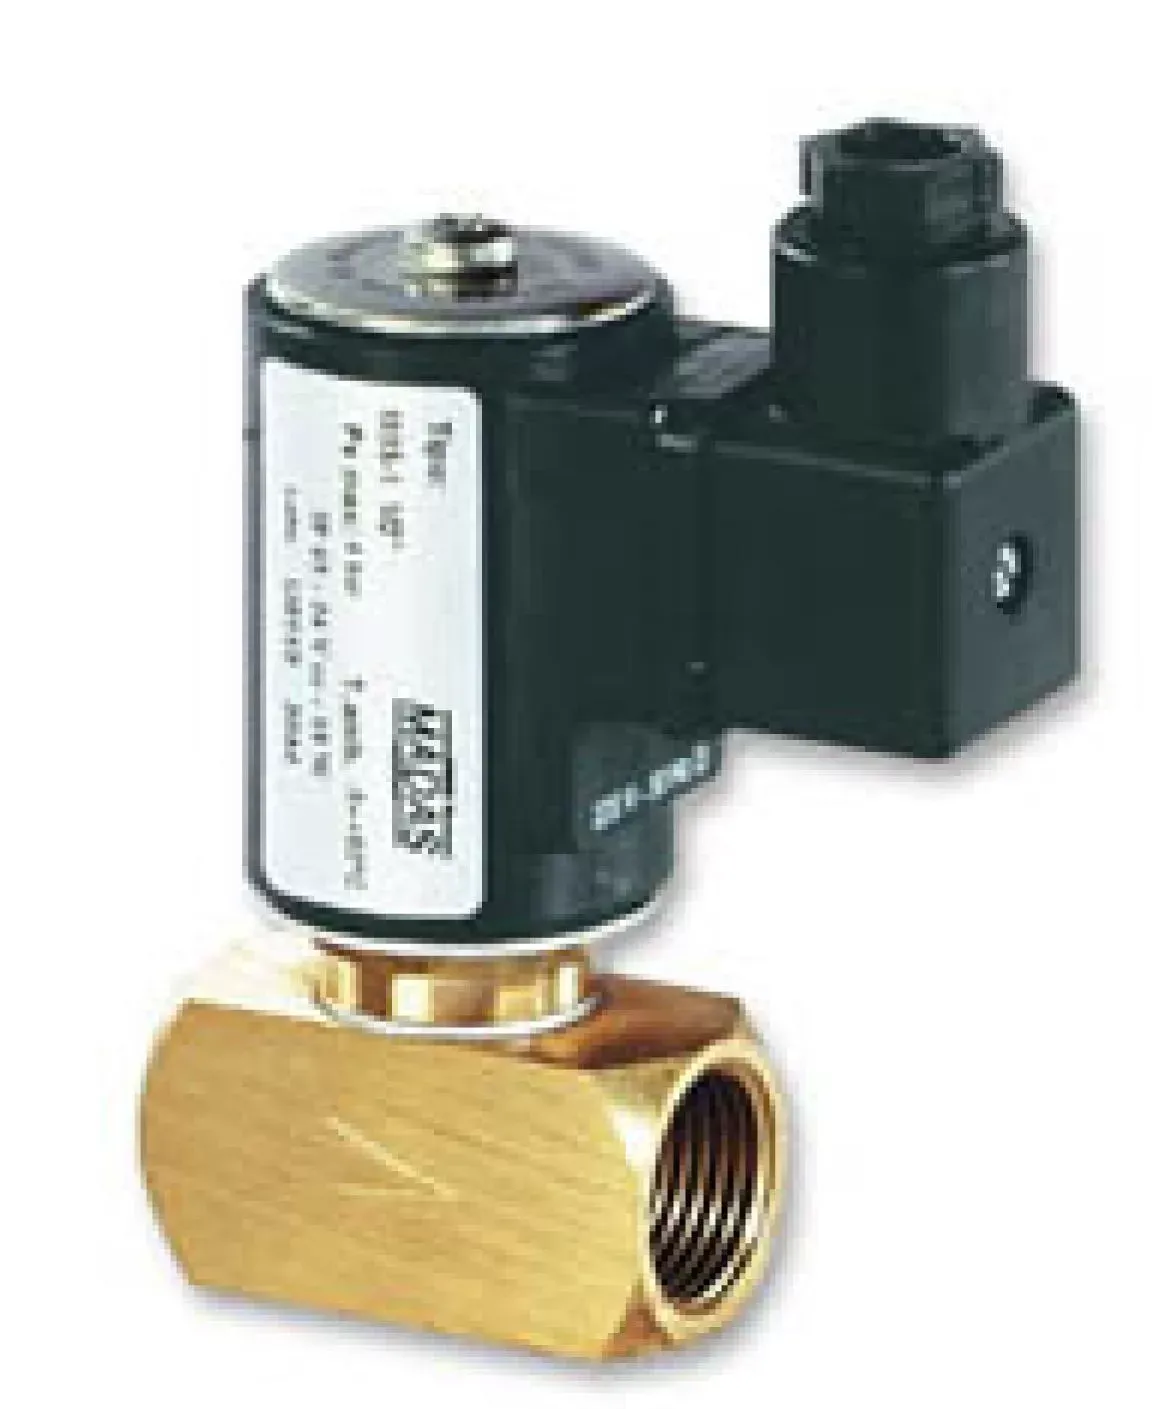 Клапан автоматический нормально - закрытый для газойля Madas M15-1, DN15 AO02 008, 0,4 МПа, резьба